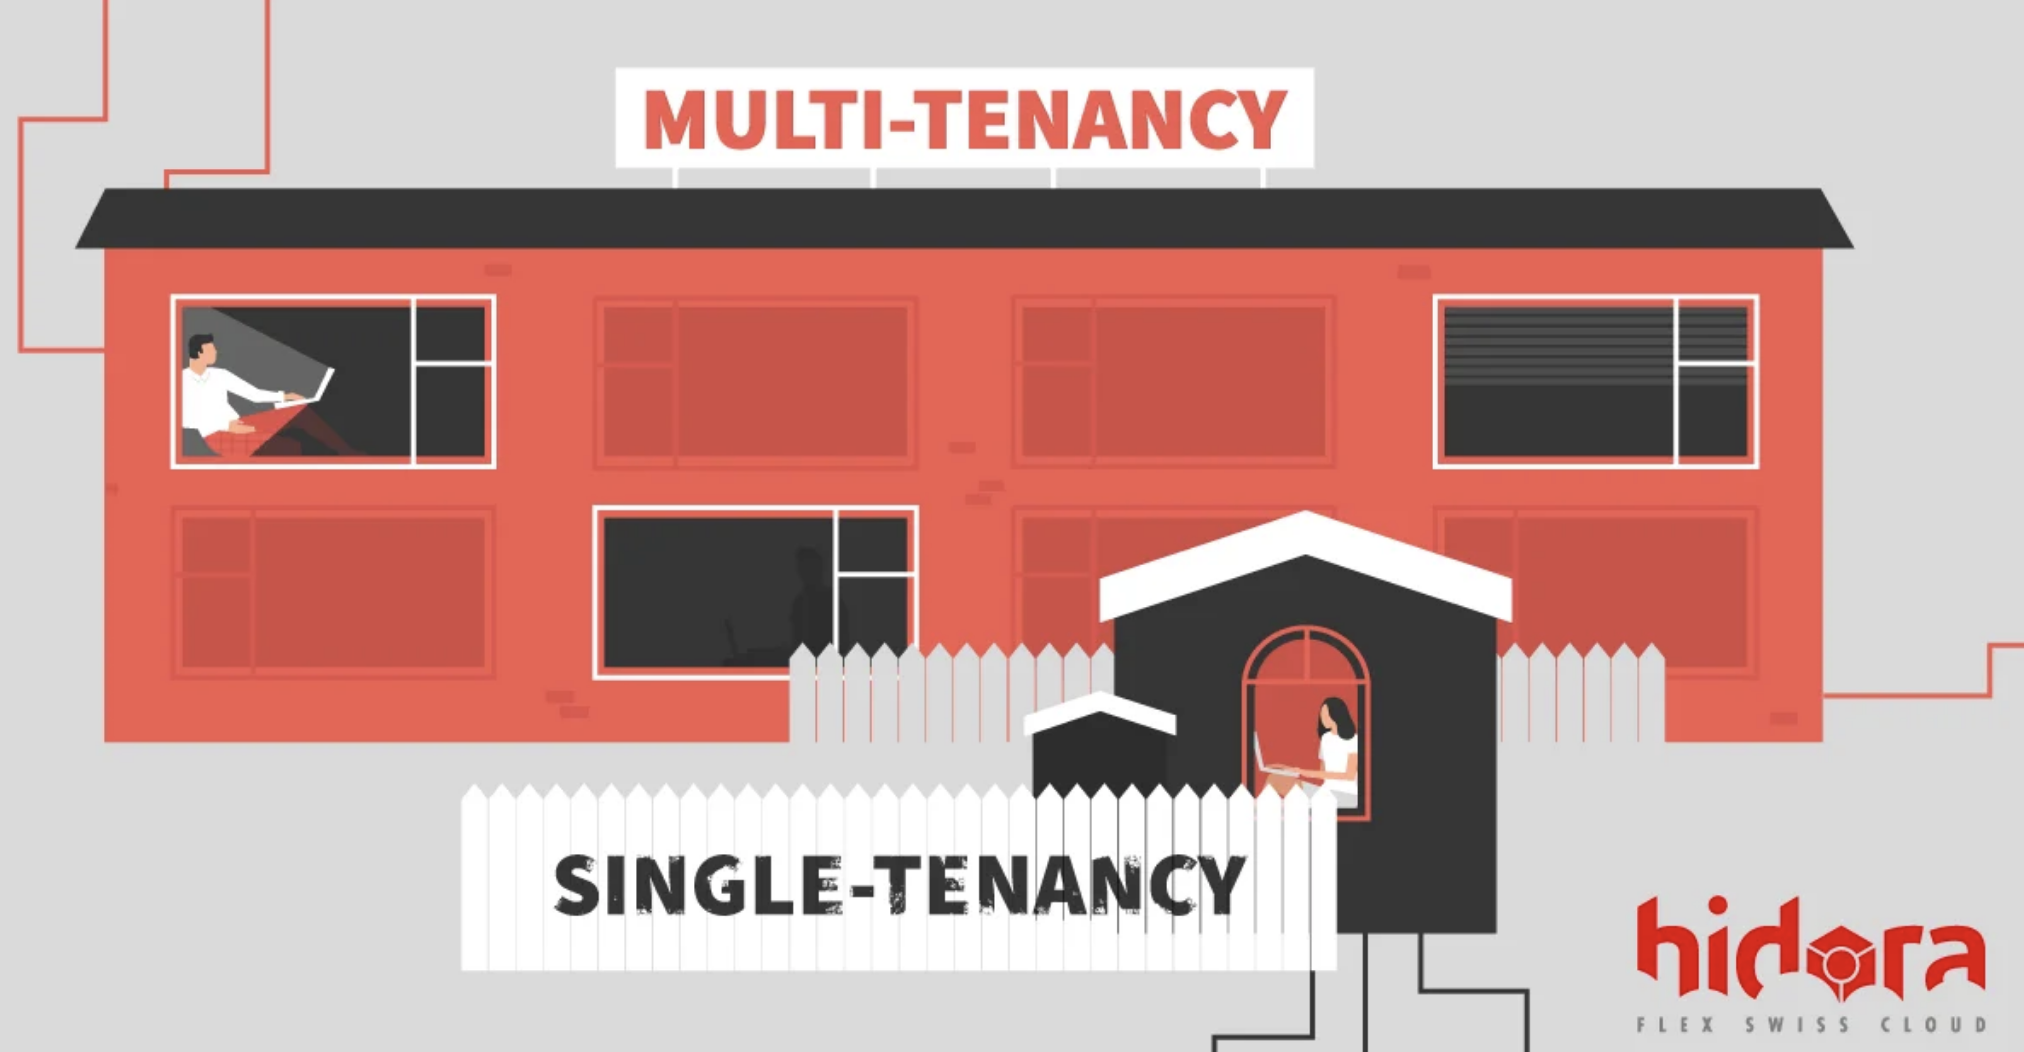 Multi-tenant architecture